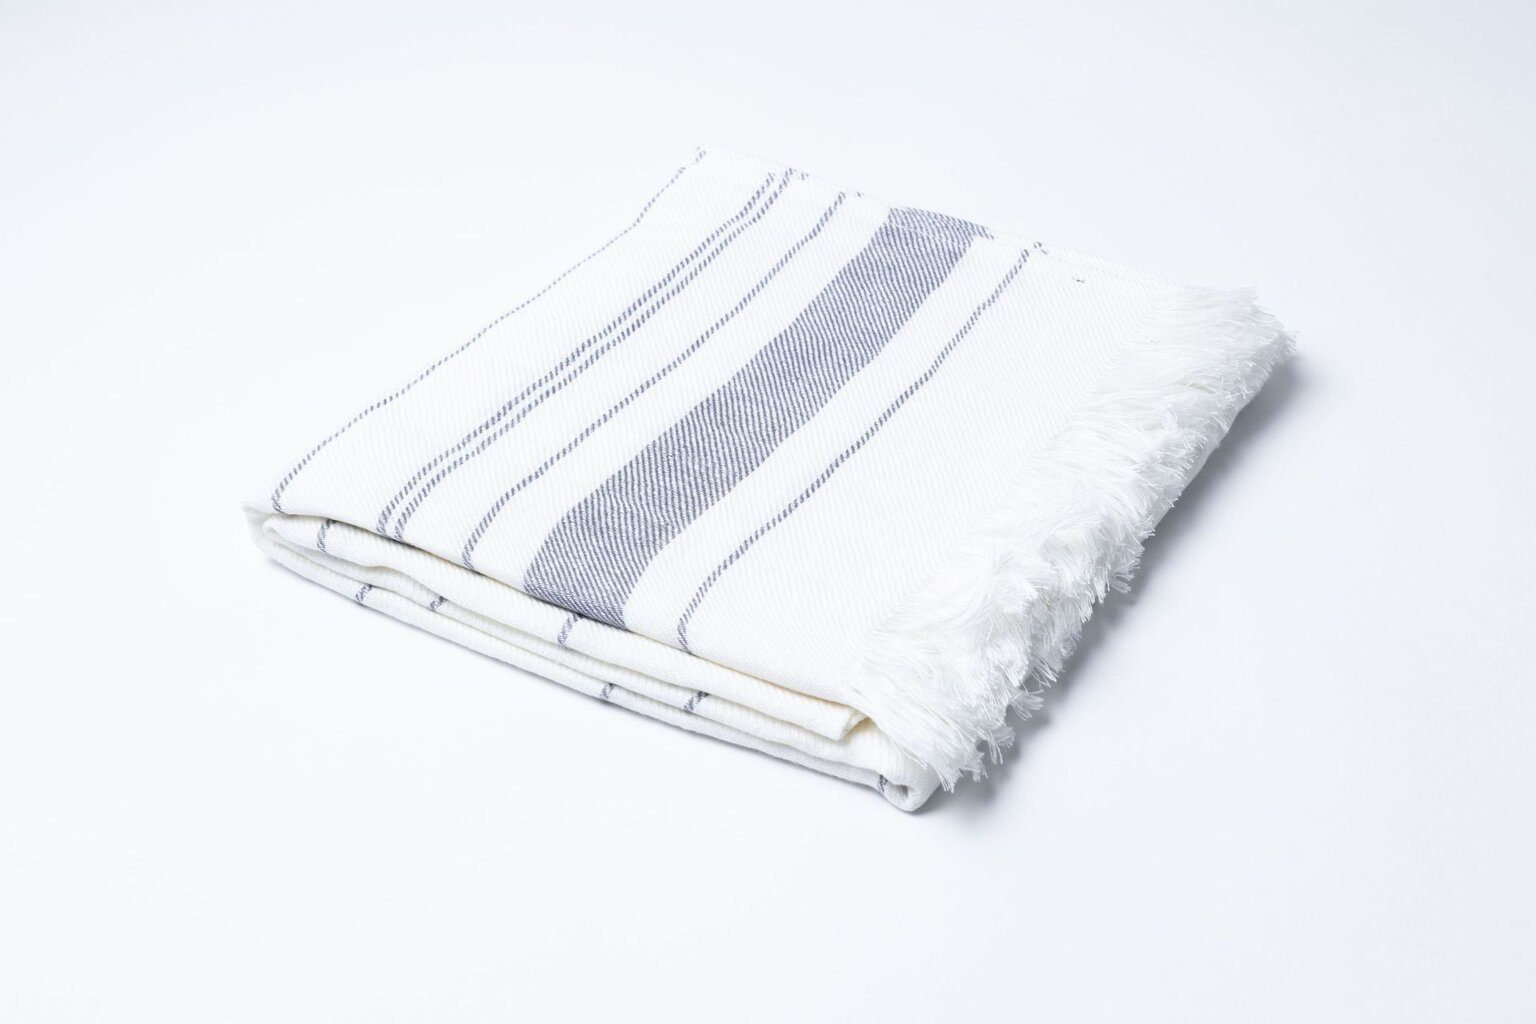 Lininis pirties hamamo rankšluostis, natūrali spalva su juostelėmis 06, 105x200 kaina ir informacija | Baldų užvalkalai | pigu.lt